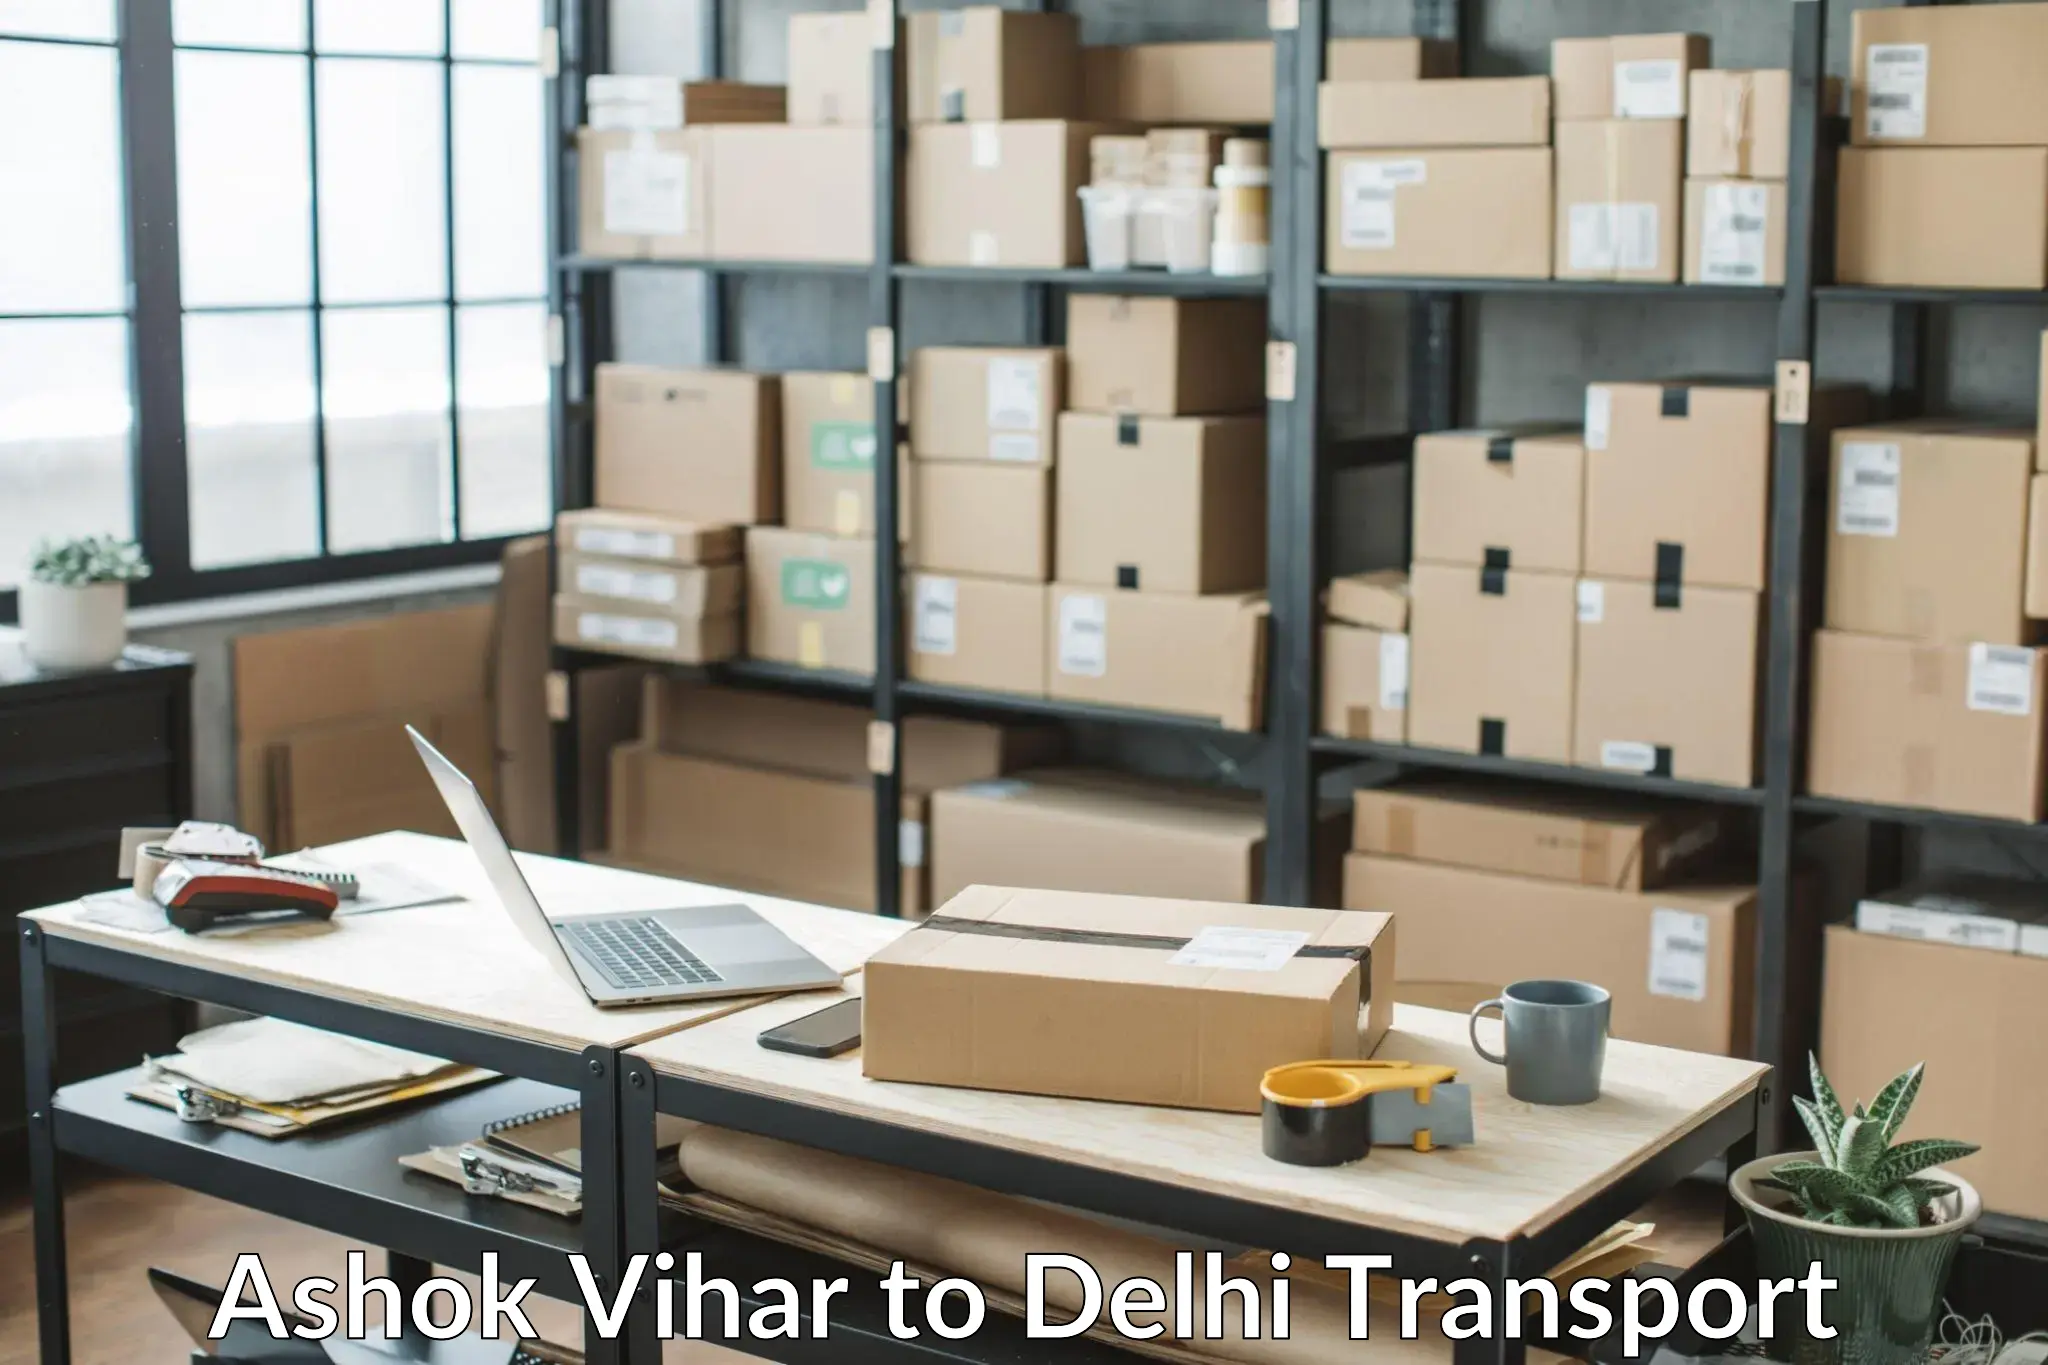 Shipping services Ashok Vihar to Delhi